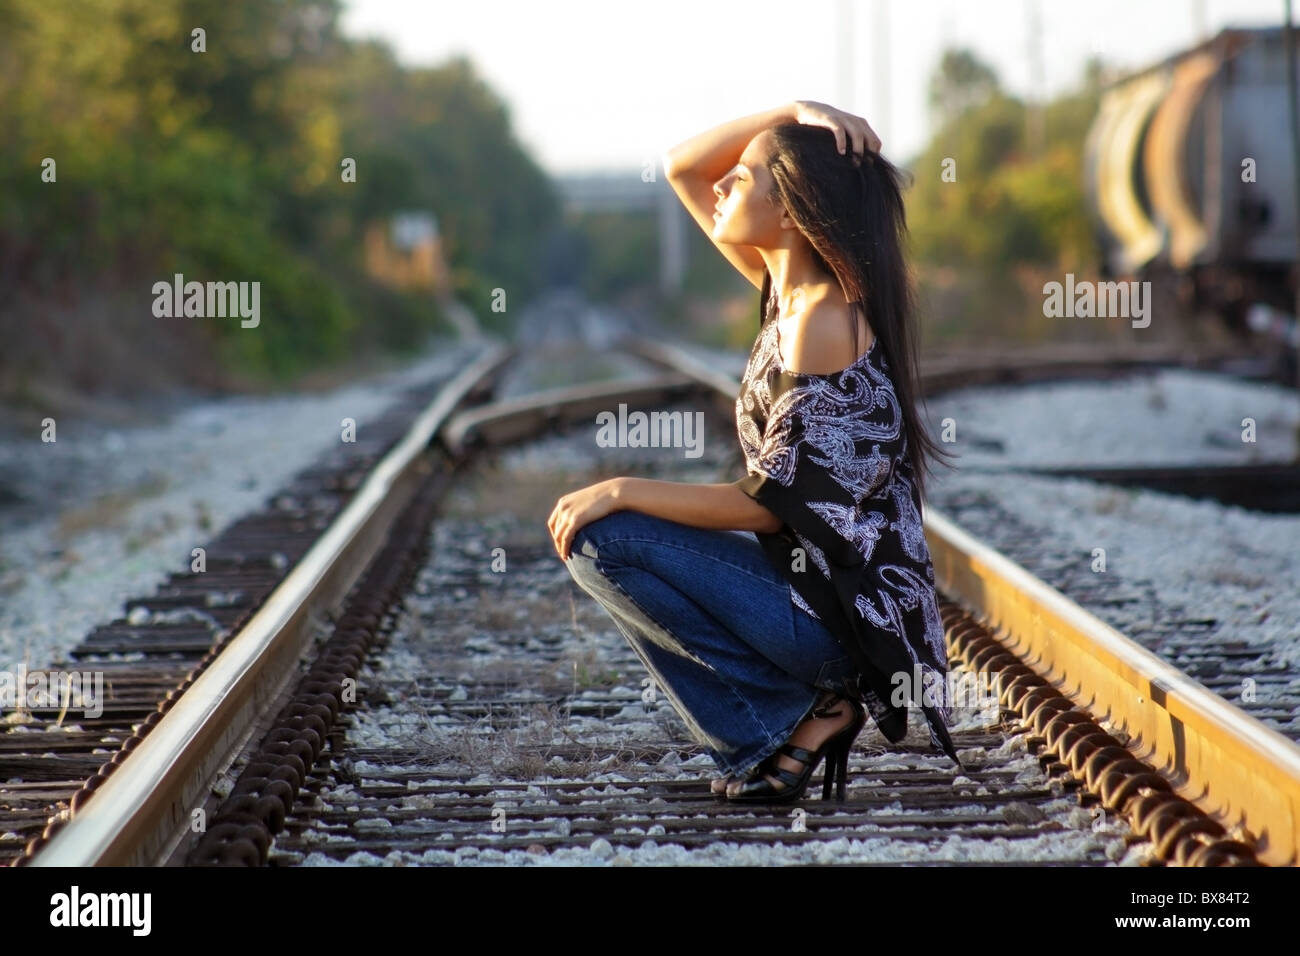 Une belle latina adolescents s'accroupit sur une voie ferrée, face au soleil, les yeux fermés. Banque D'Images